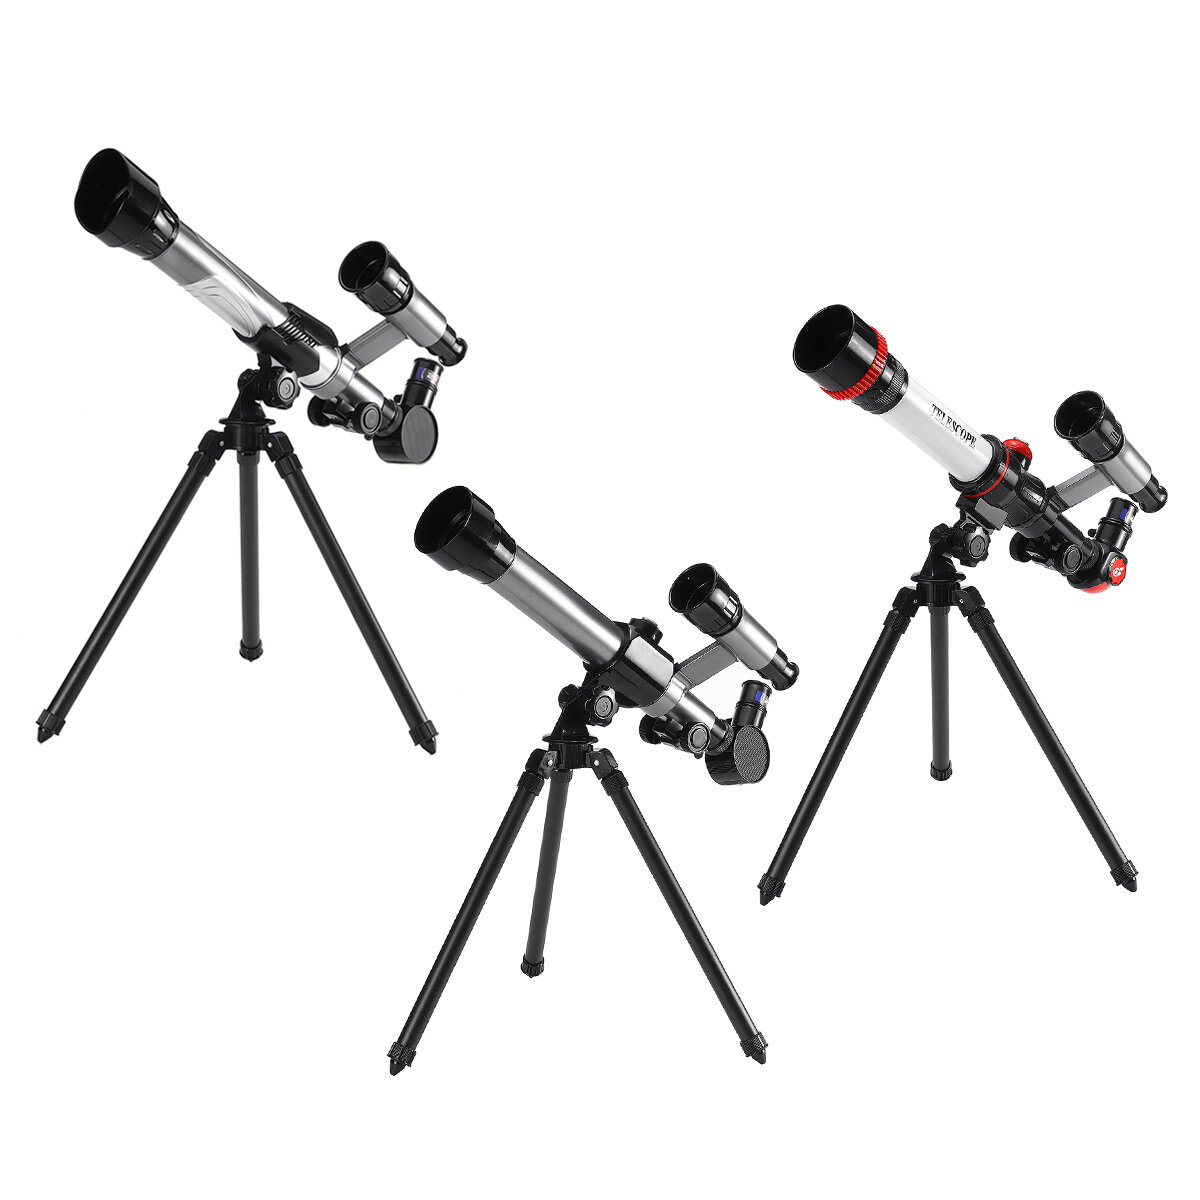 三脚付き20X/30X/40X天体望遠鏡 HD 360°回転可能 高精細望遠鏡 アウトドア観察科学実験用